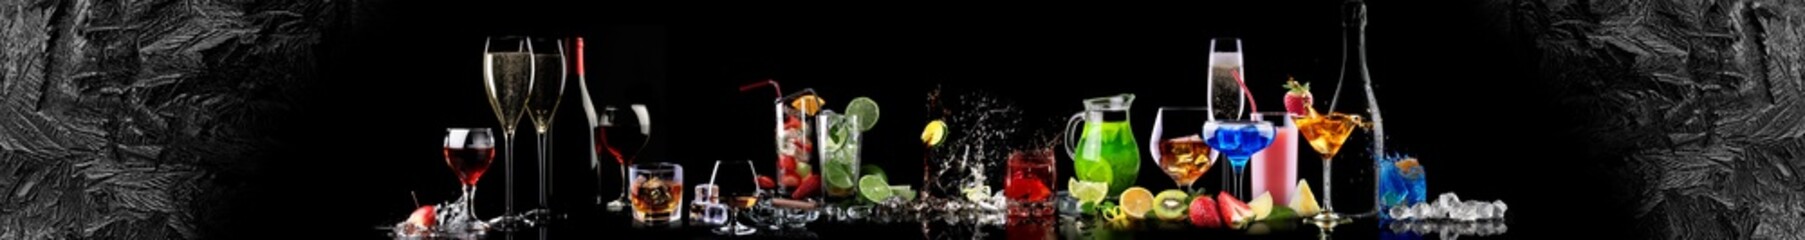 Cocktails on a black background